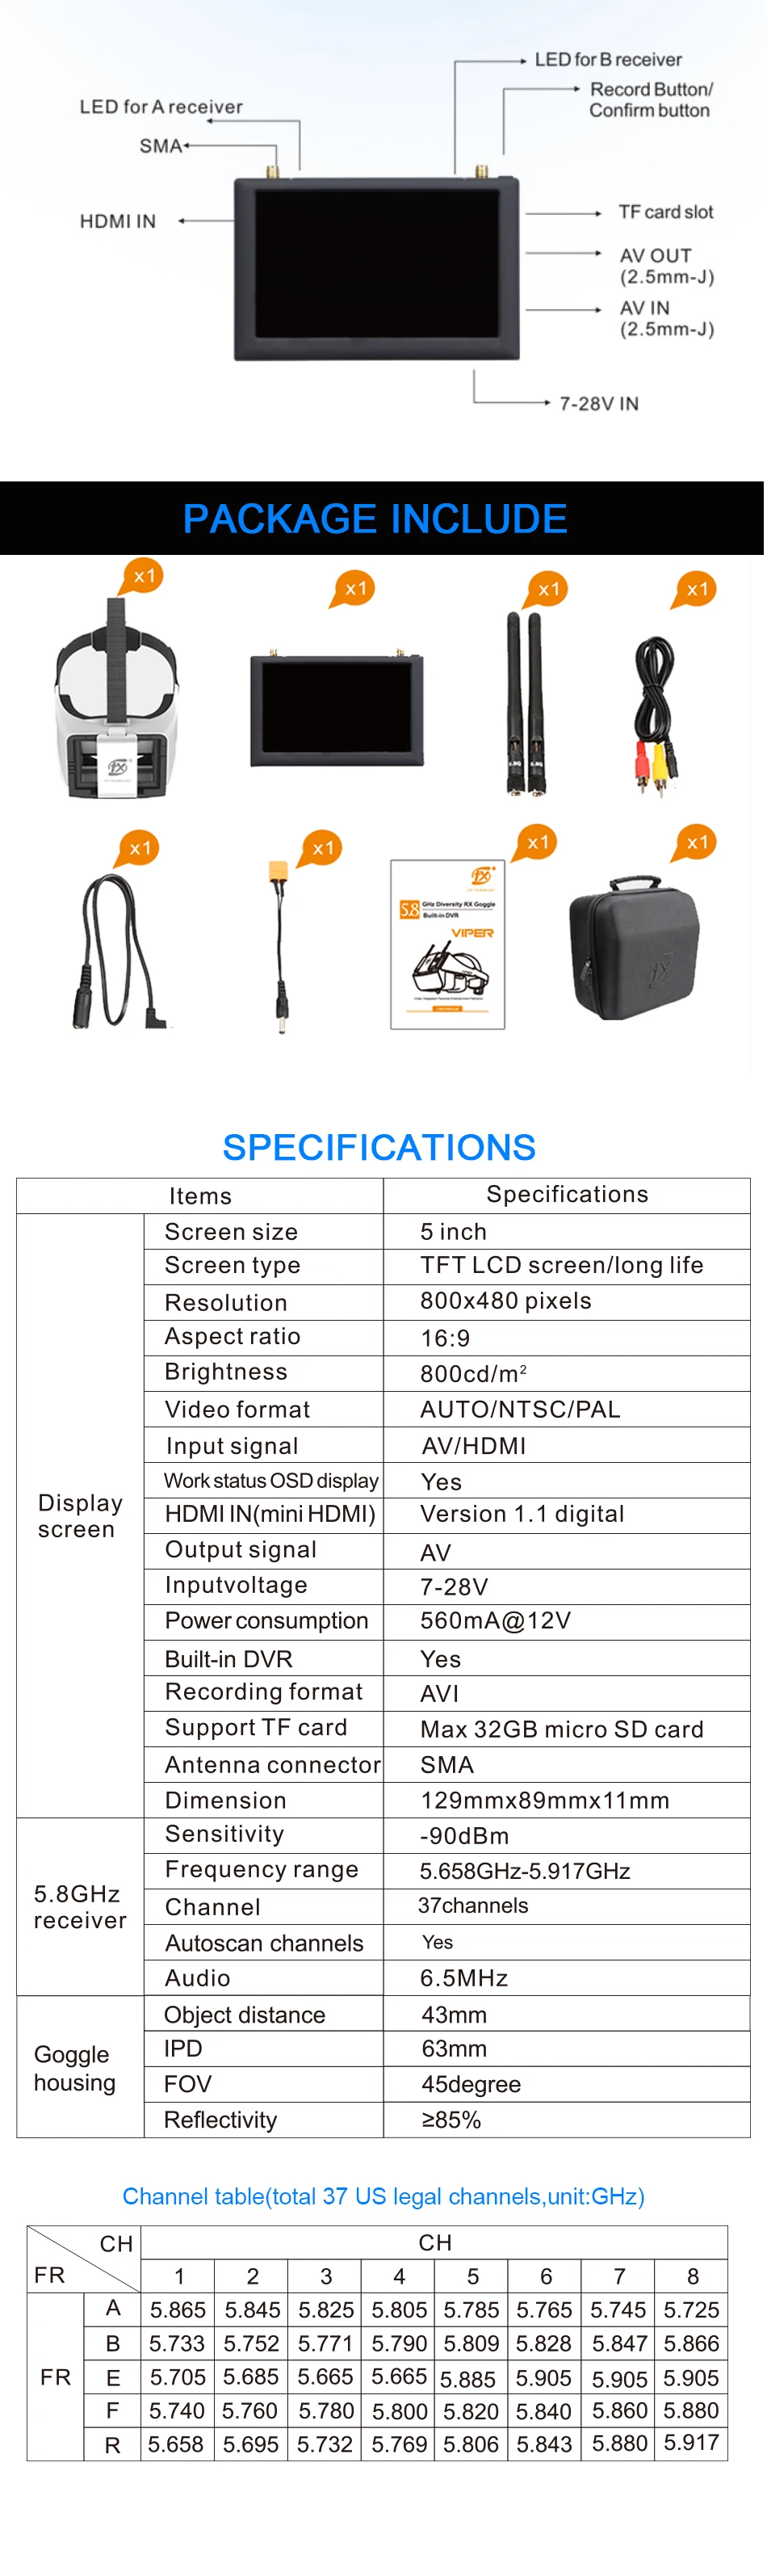 FXT VIPER 5,8G разнообразие HD FPV очки с DVR встроенный рефрактор для модели радиоуправляемого дрона Мультикоптер запасные части Аксессуары